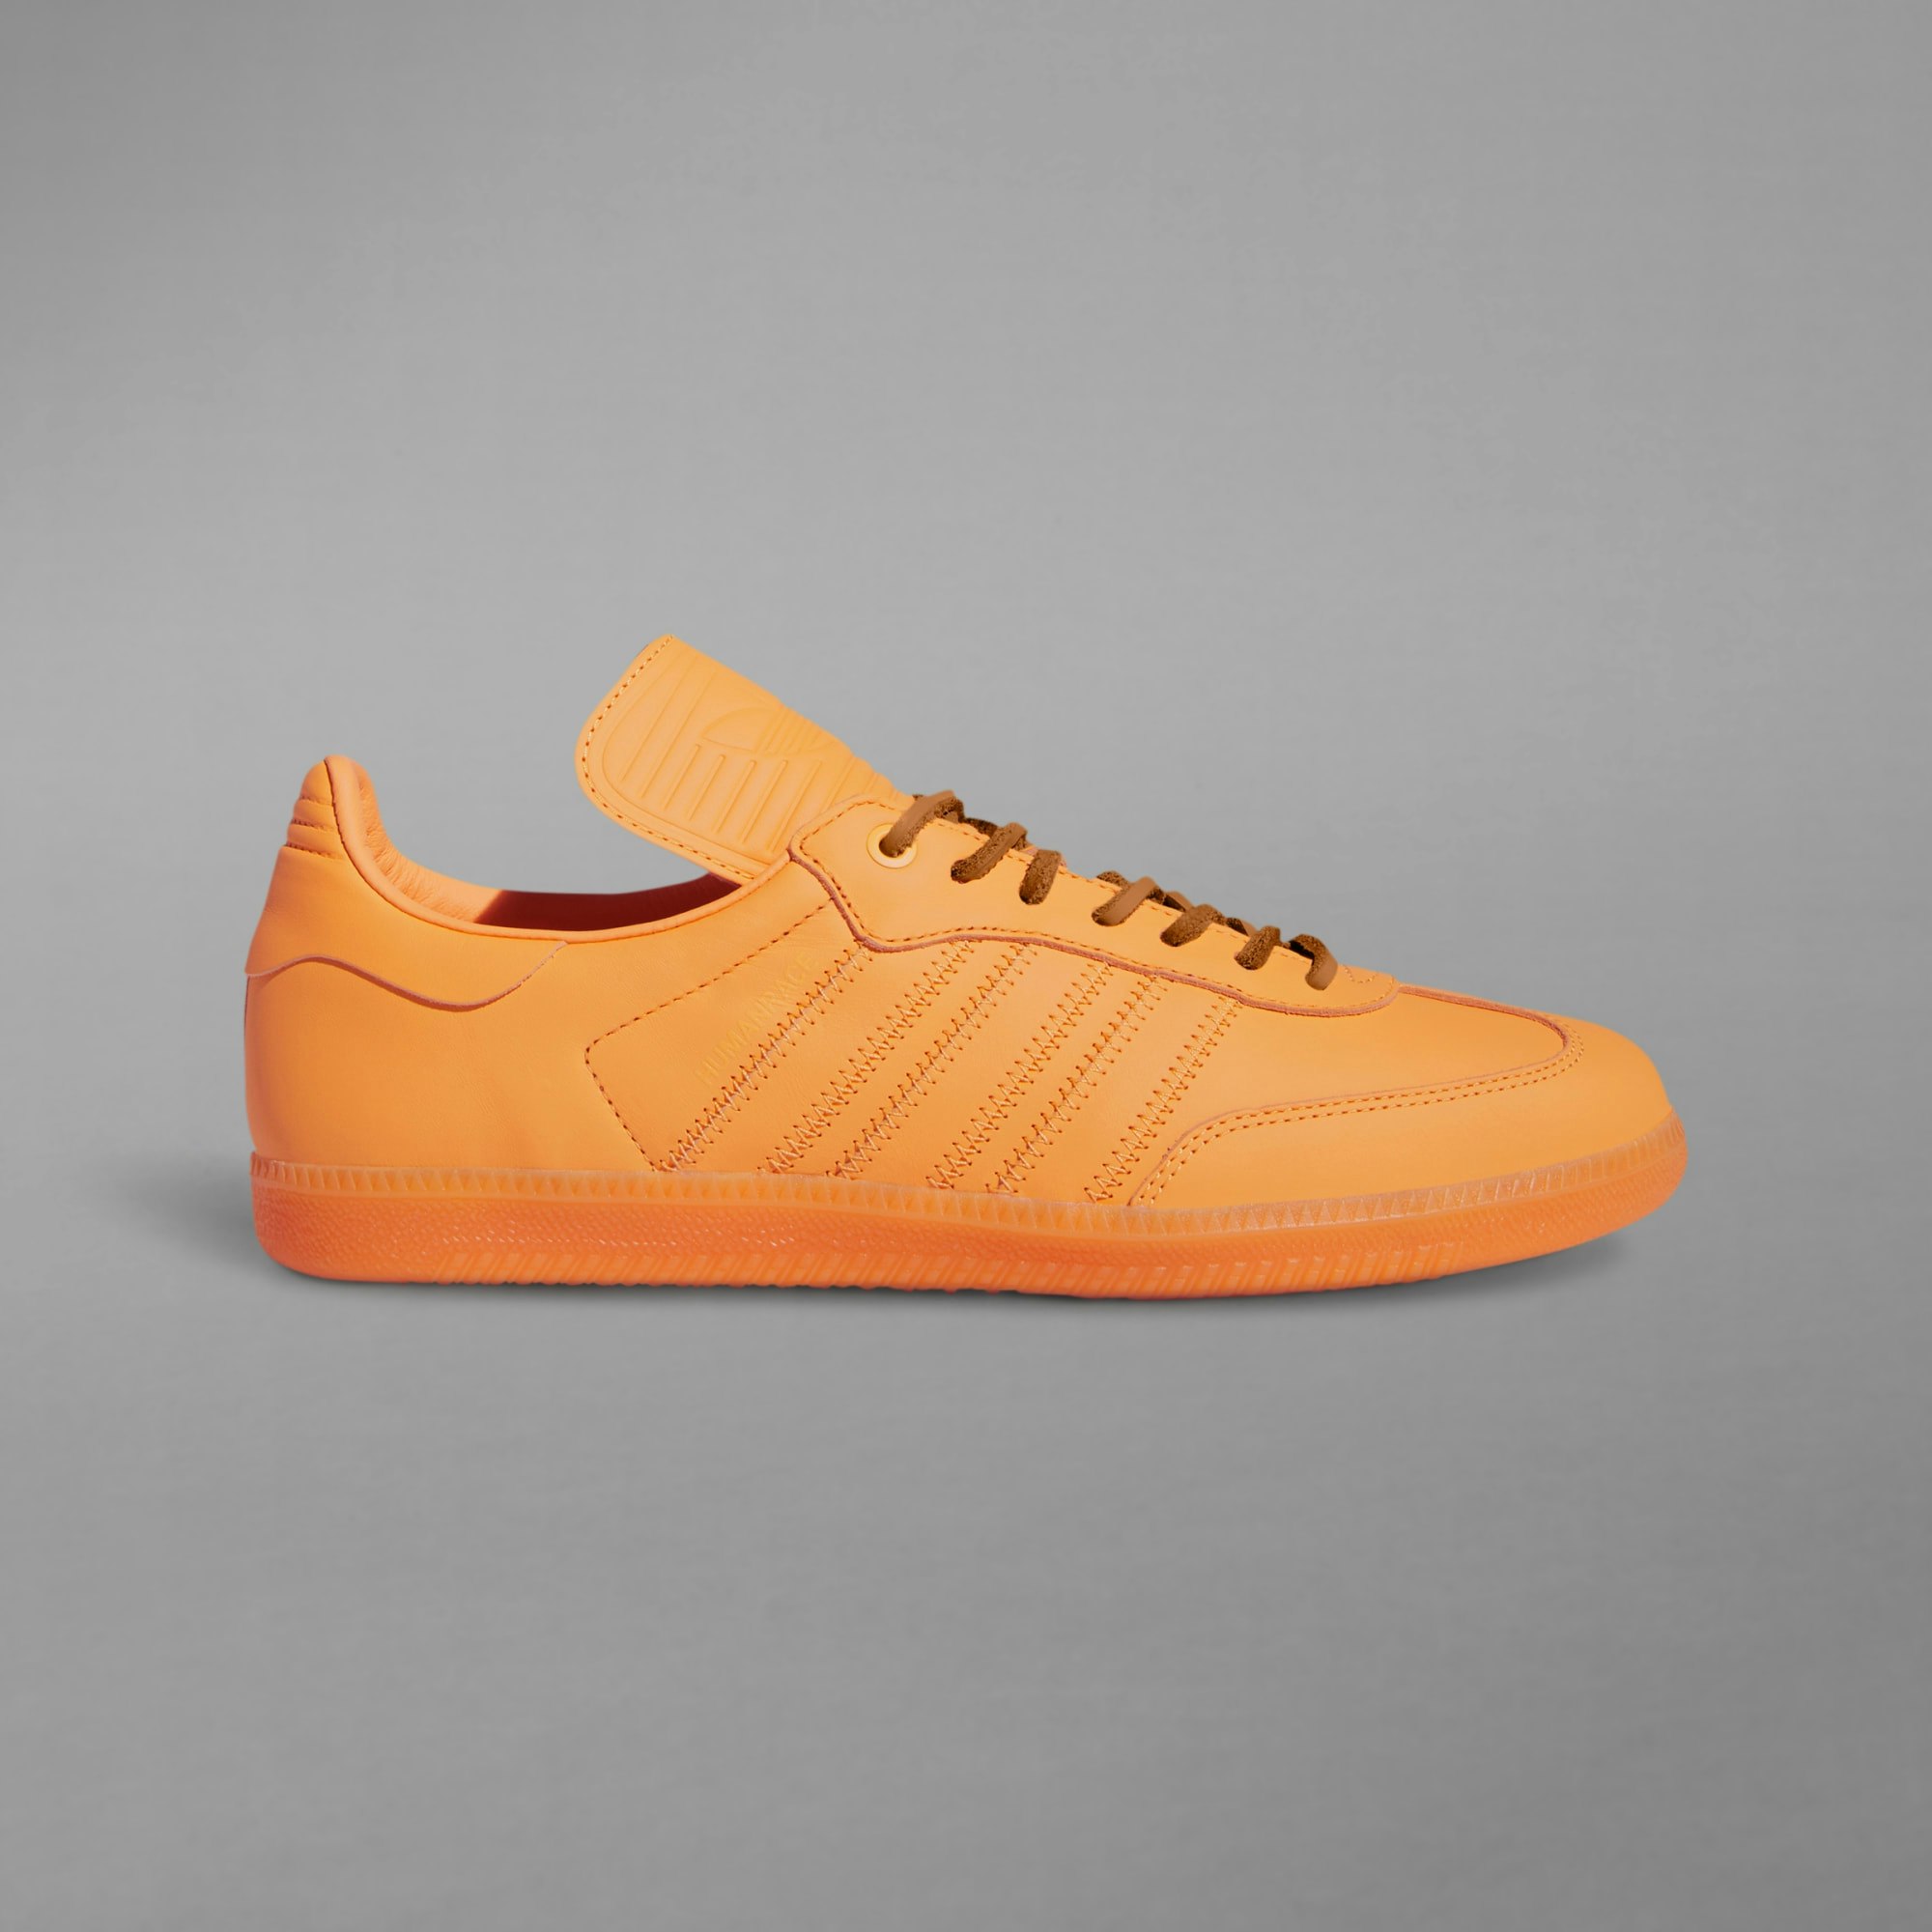 Pharrell Williams x adidas Samba "Humanrace" (Orange)